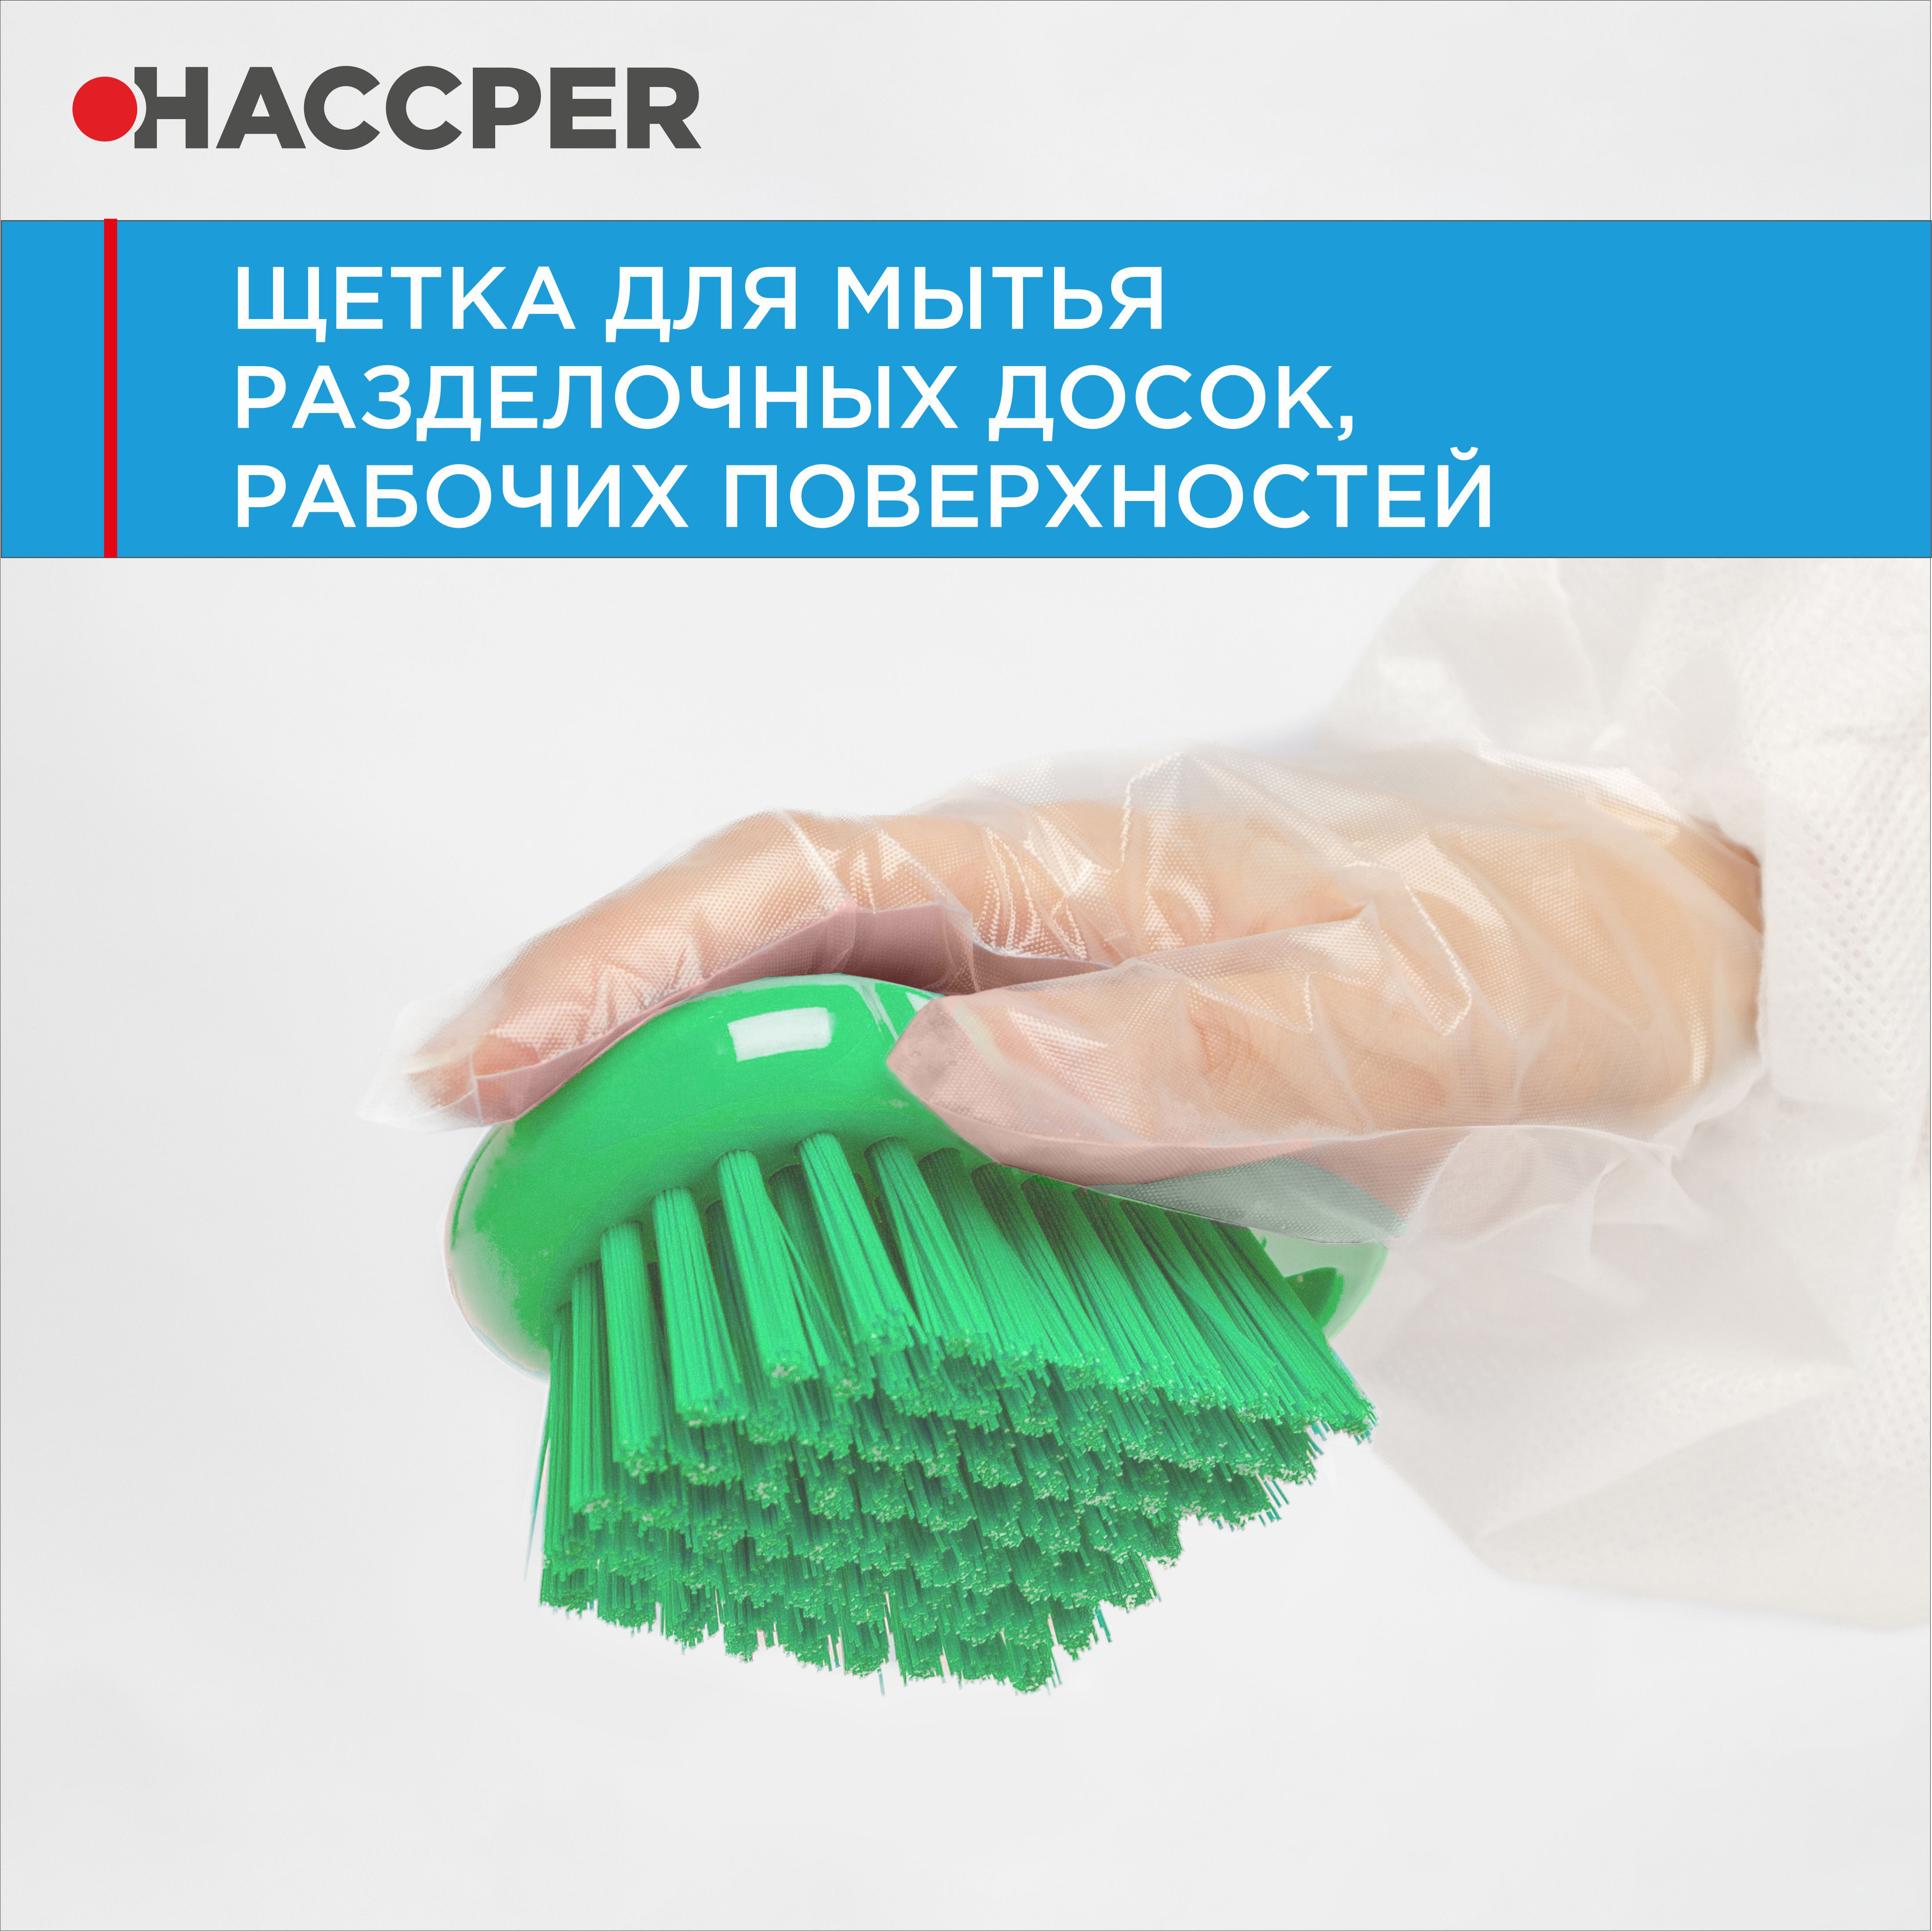 Щетка HACCPER для мытья разделочных досок, рабочих поверхностей, зеленая